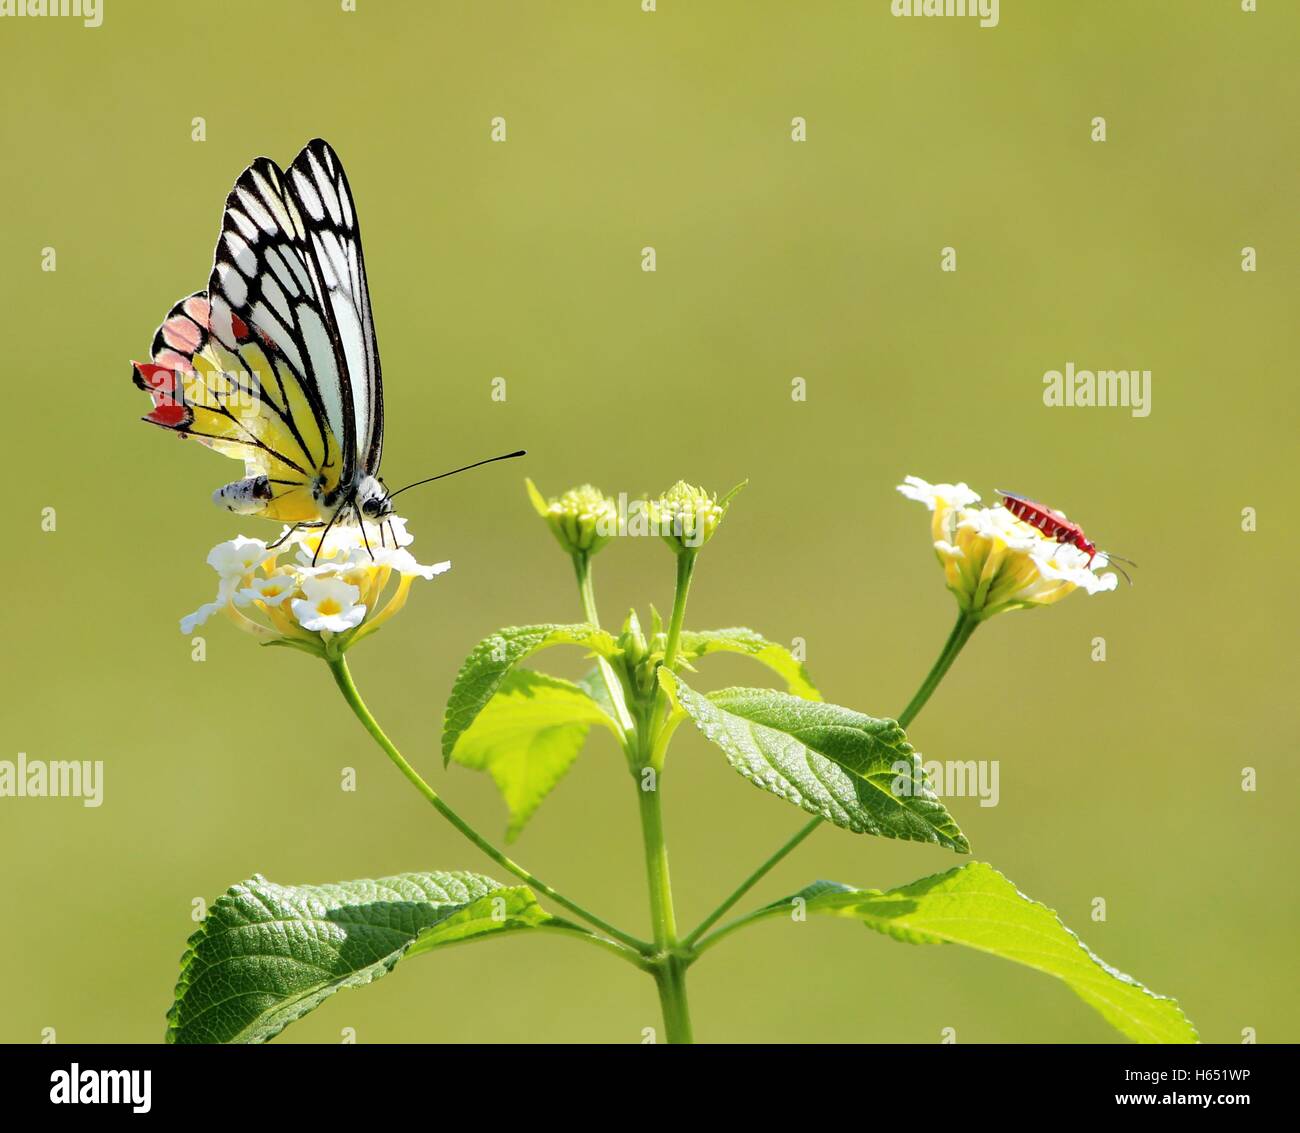 Porque compartir es cuidar! Jezabel común butterfly - Delias eucharis Pieridae con algodón bug disfrutando de la mañana Foto de stock